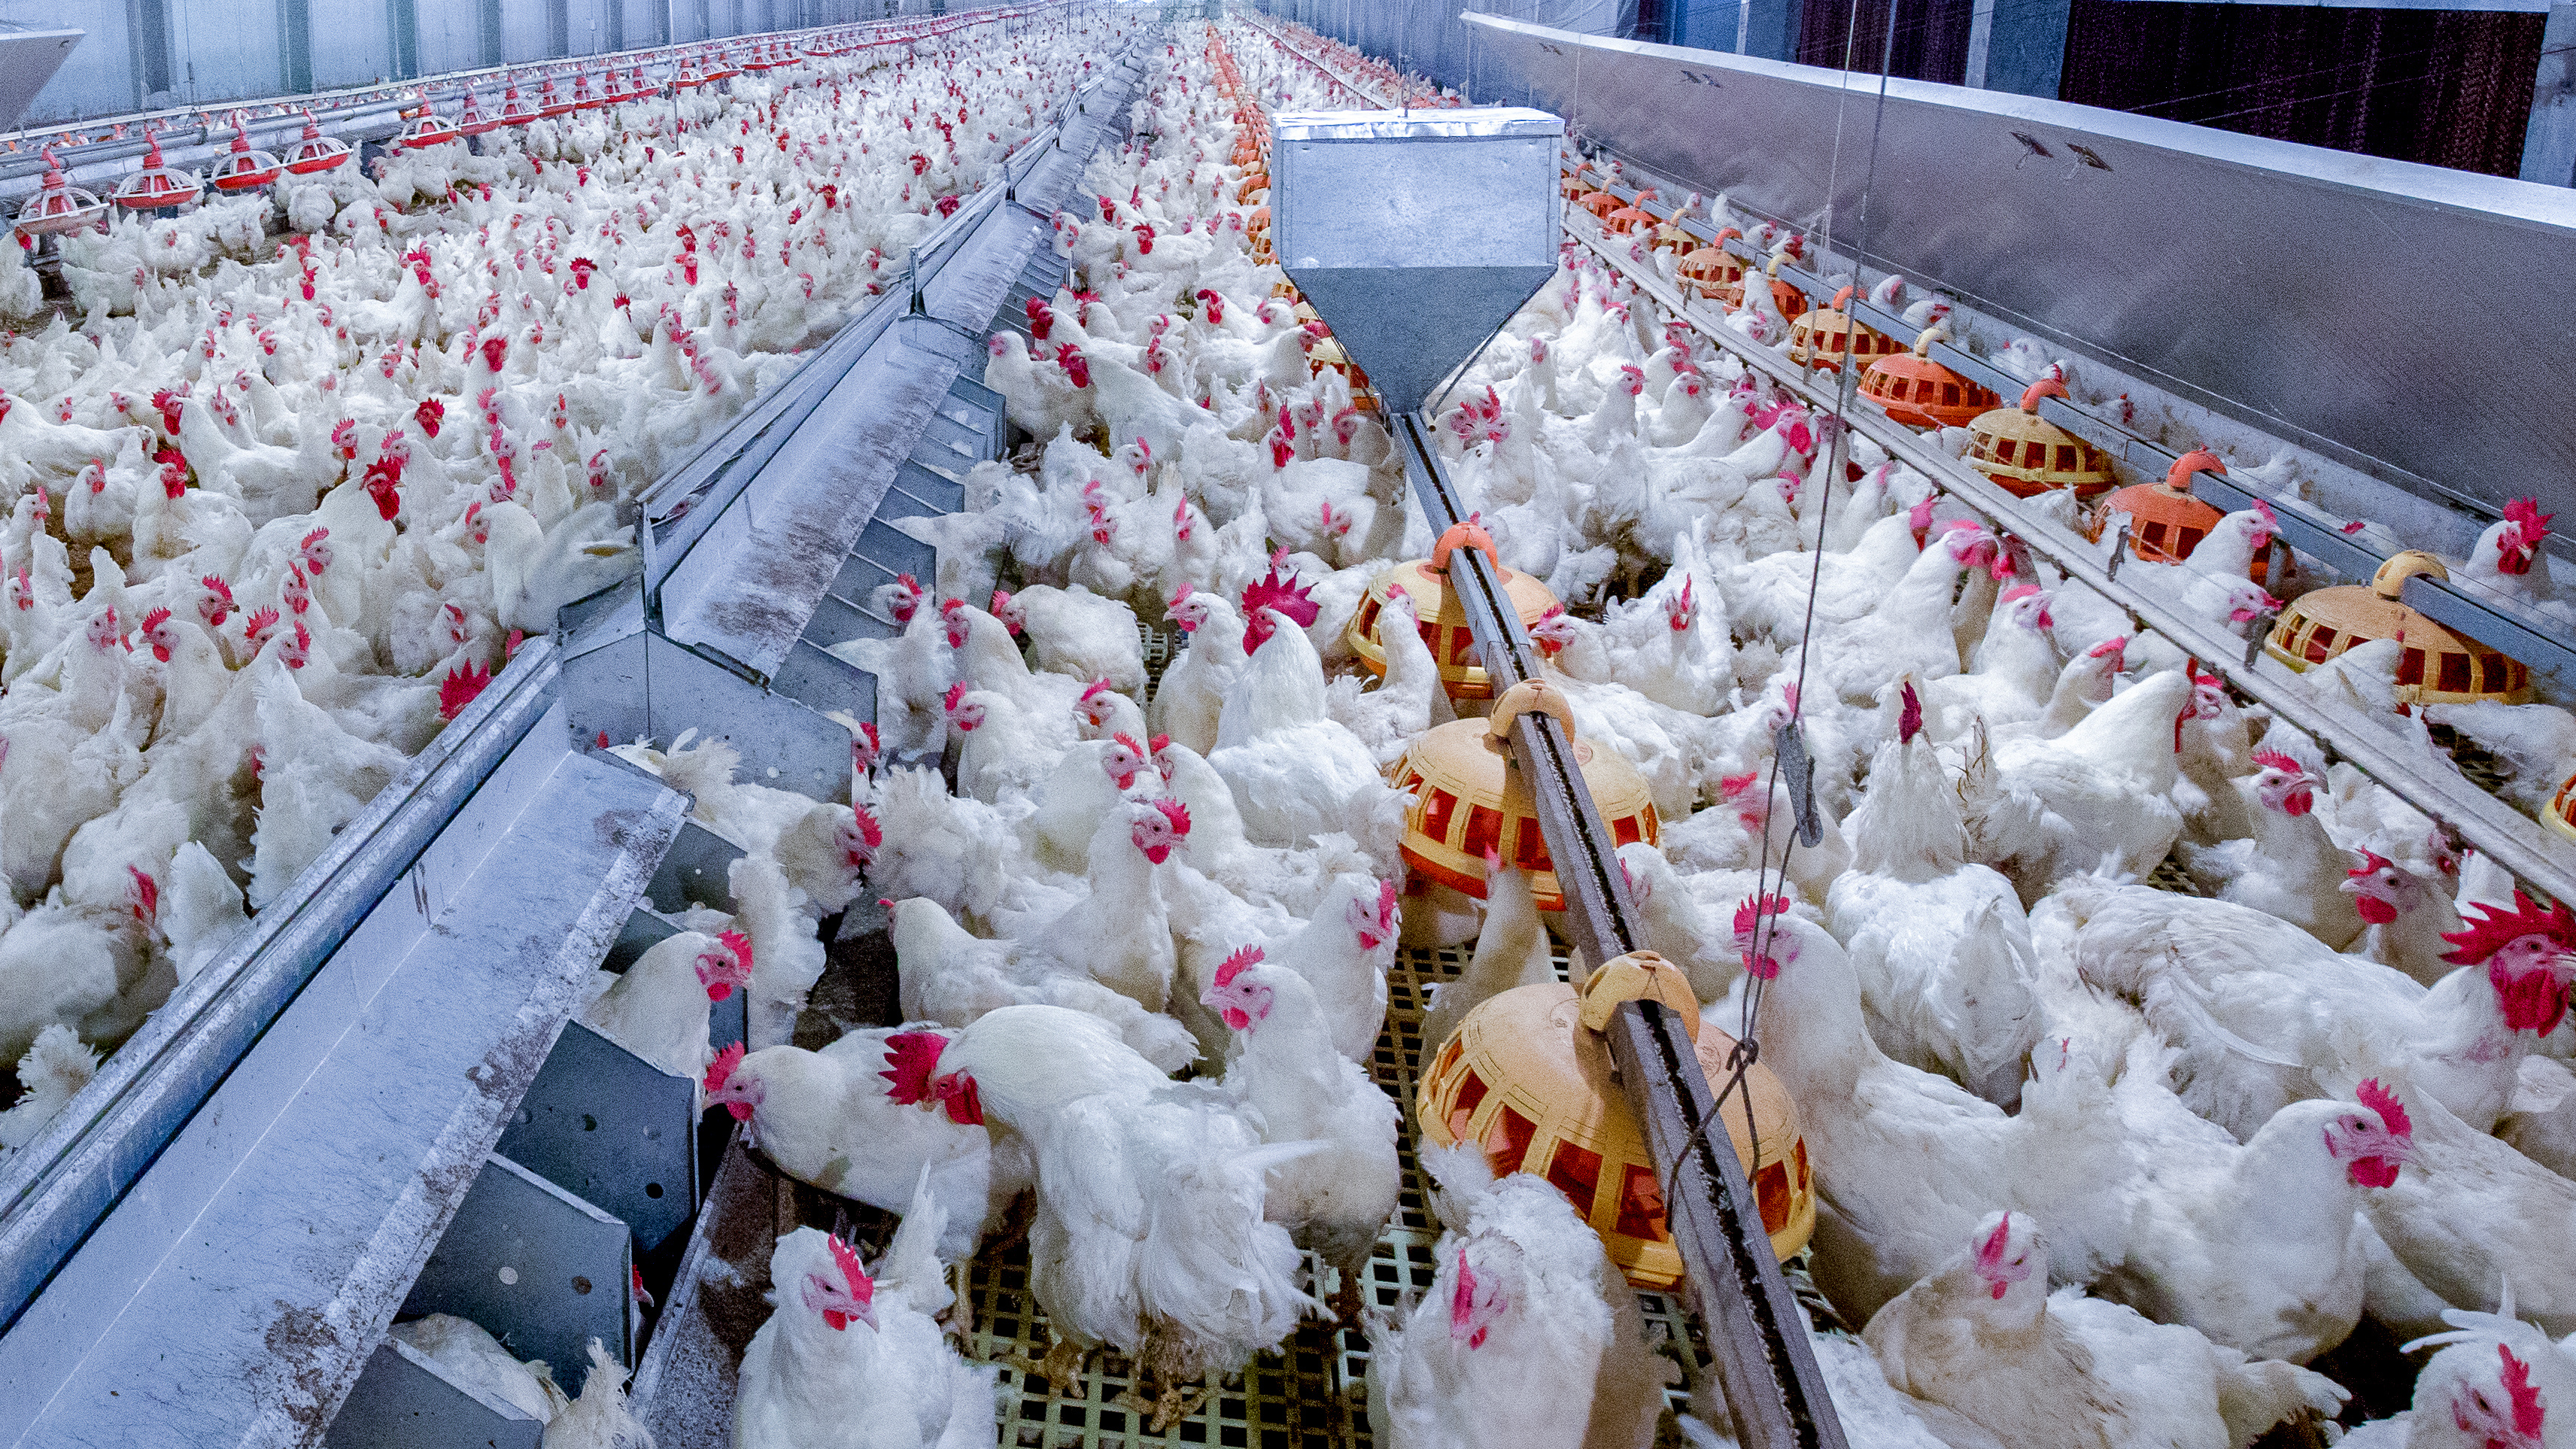 La grippe aviaire est un groupe de virus qui infecte les volailles d'élevage mais aussi les oiseaux sauvages et d'autres animaux. © Chayakorn, Adobe Stock